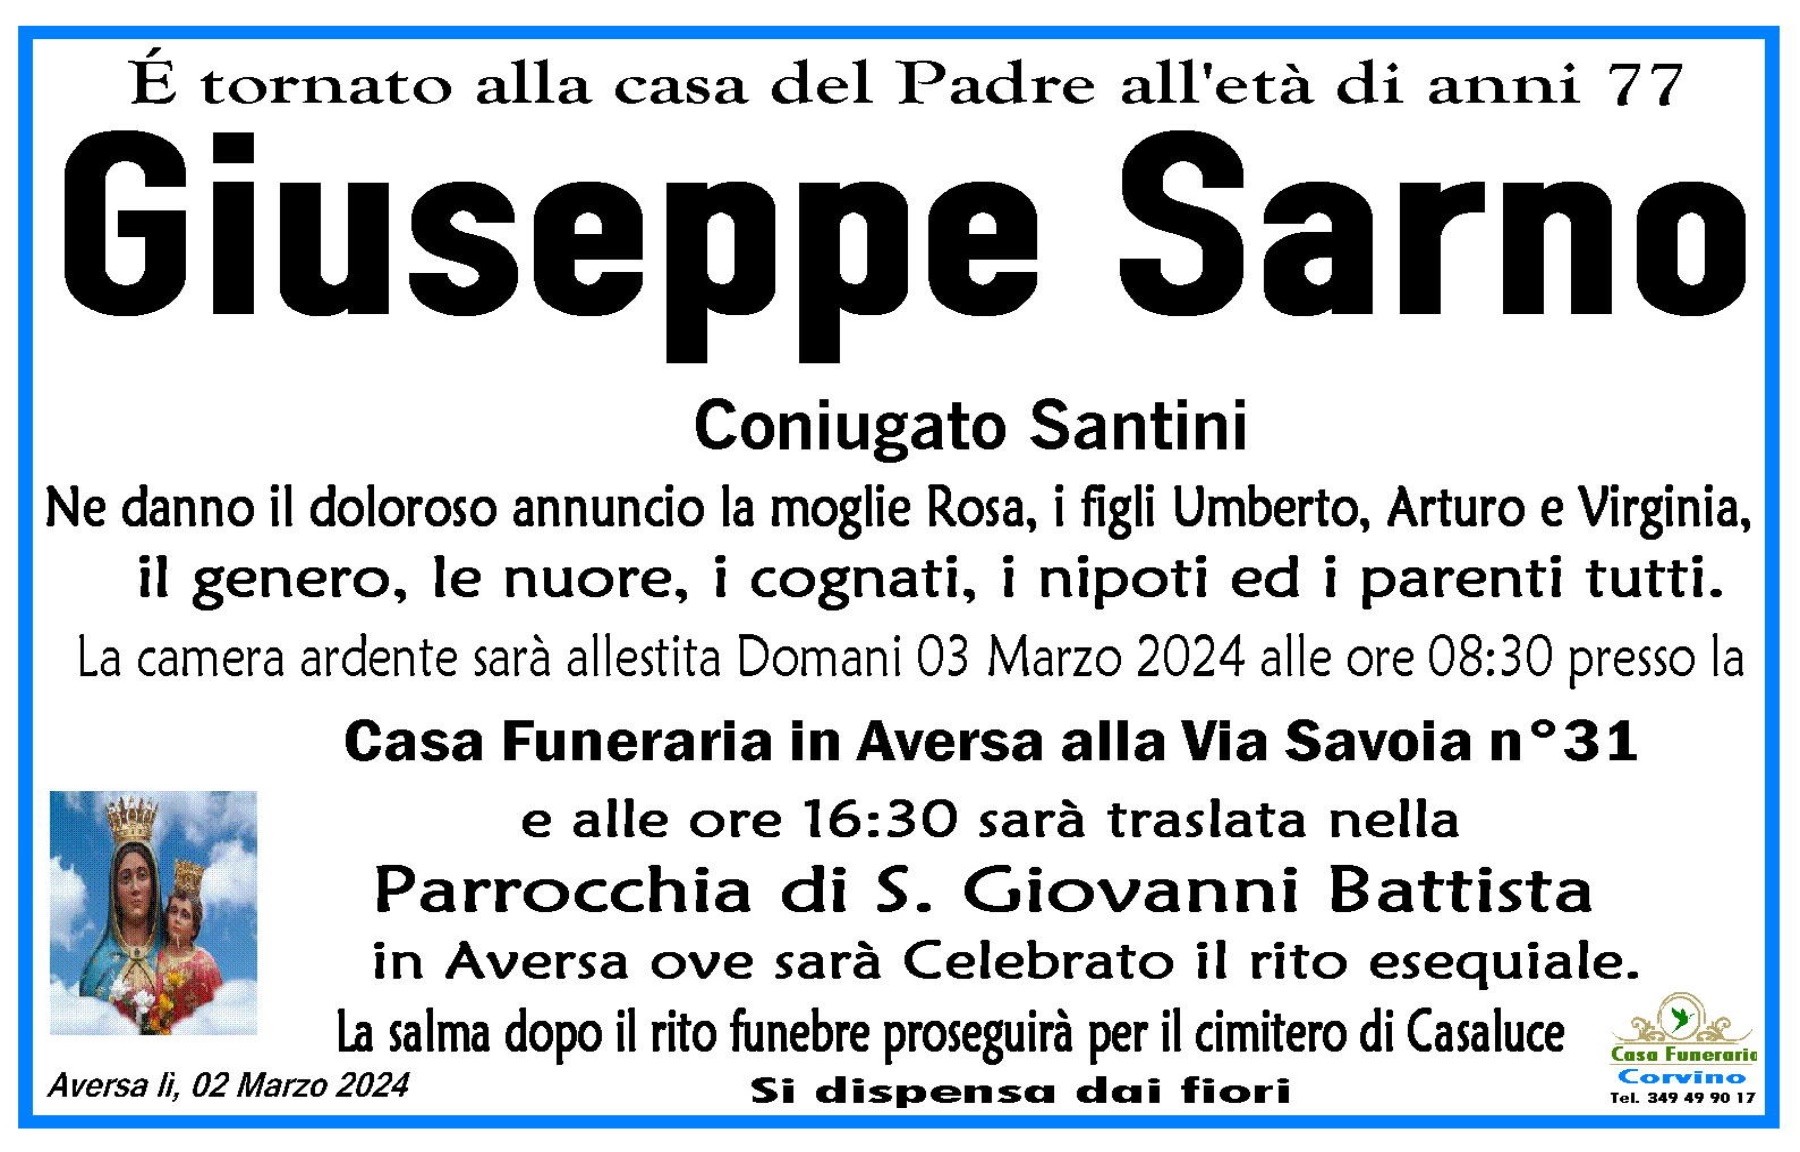 Giuseppe Sarno